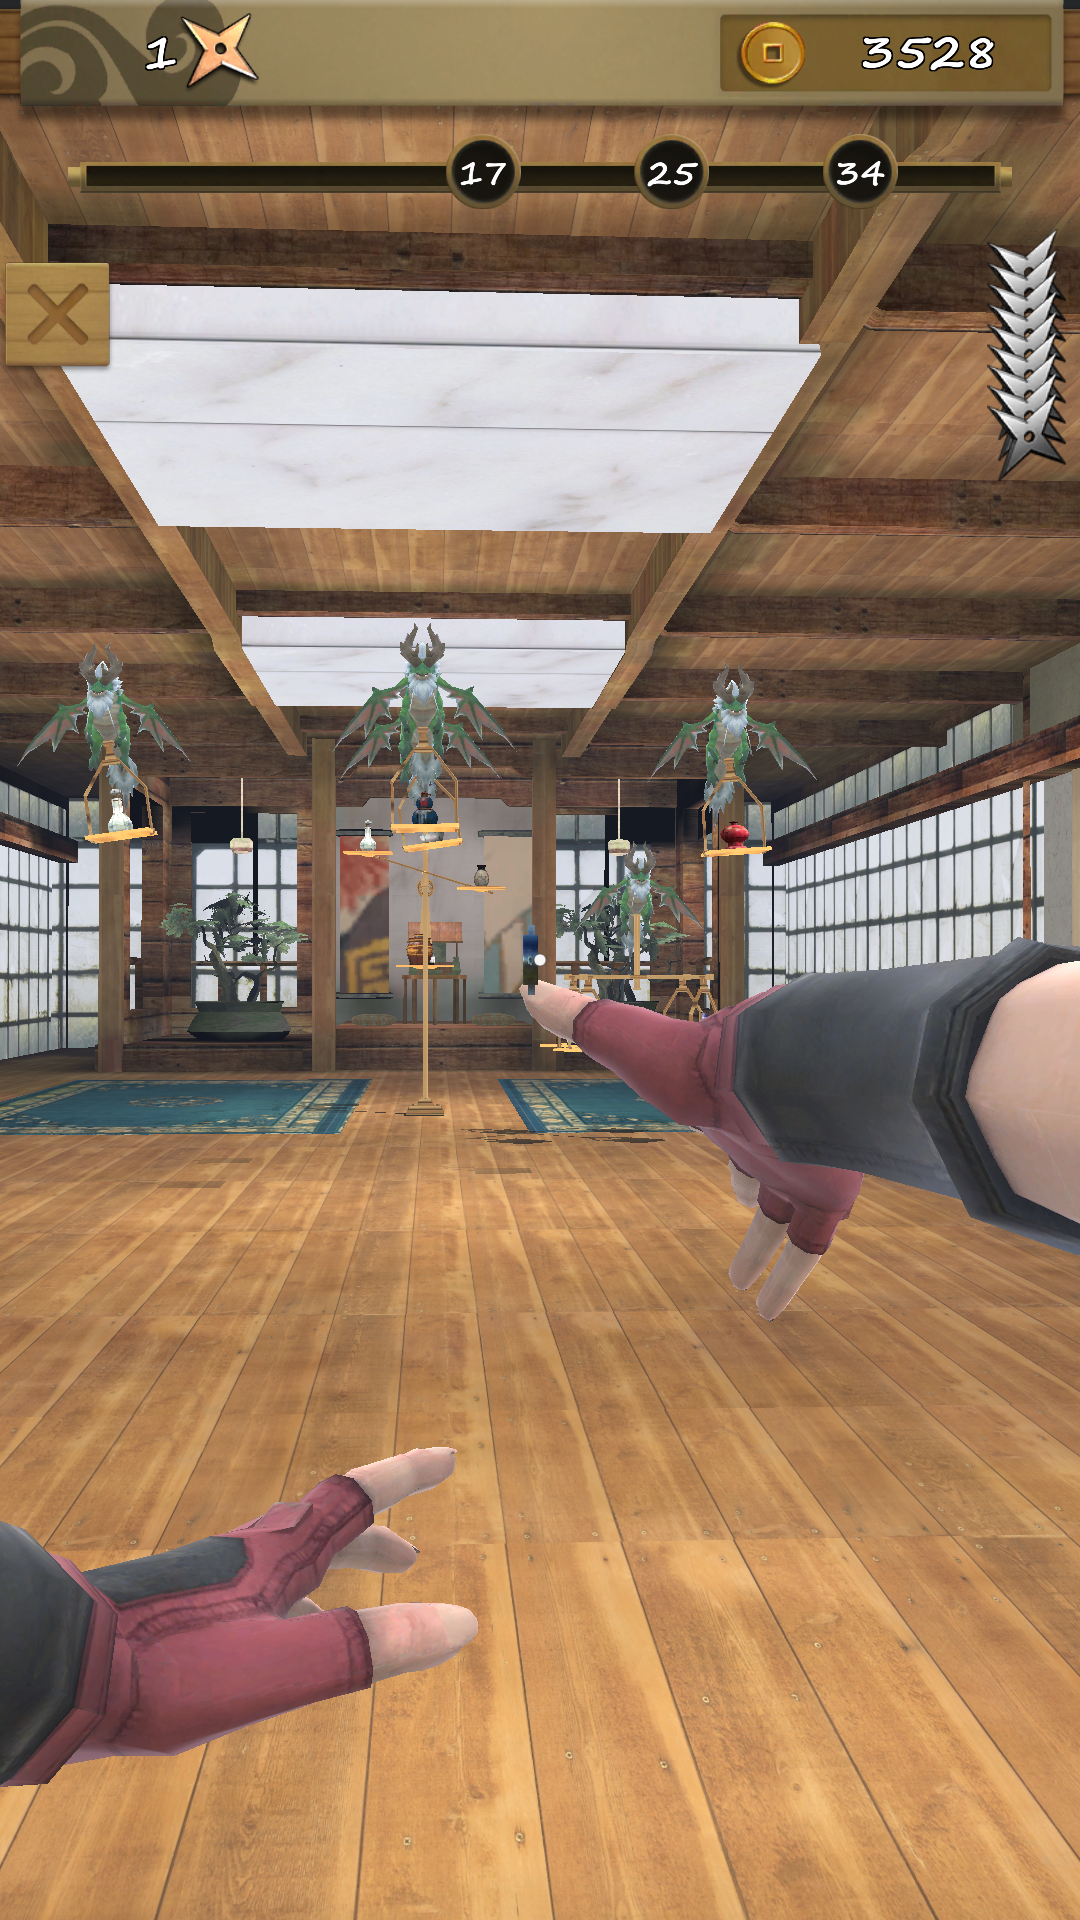 Screenshot 1 of Ninja Shuriken: tiro de dardos 3.3